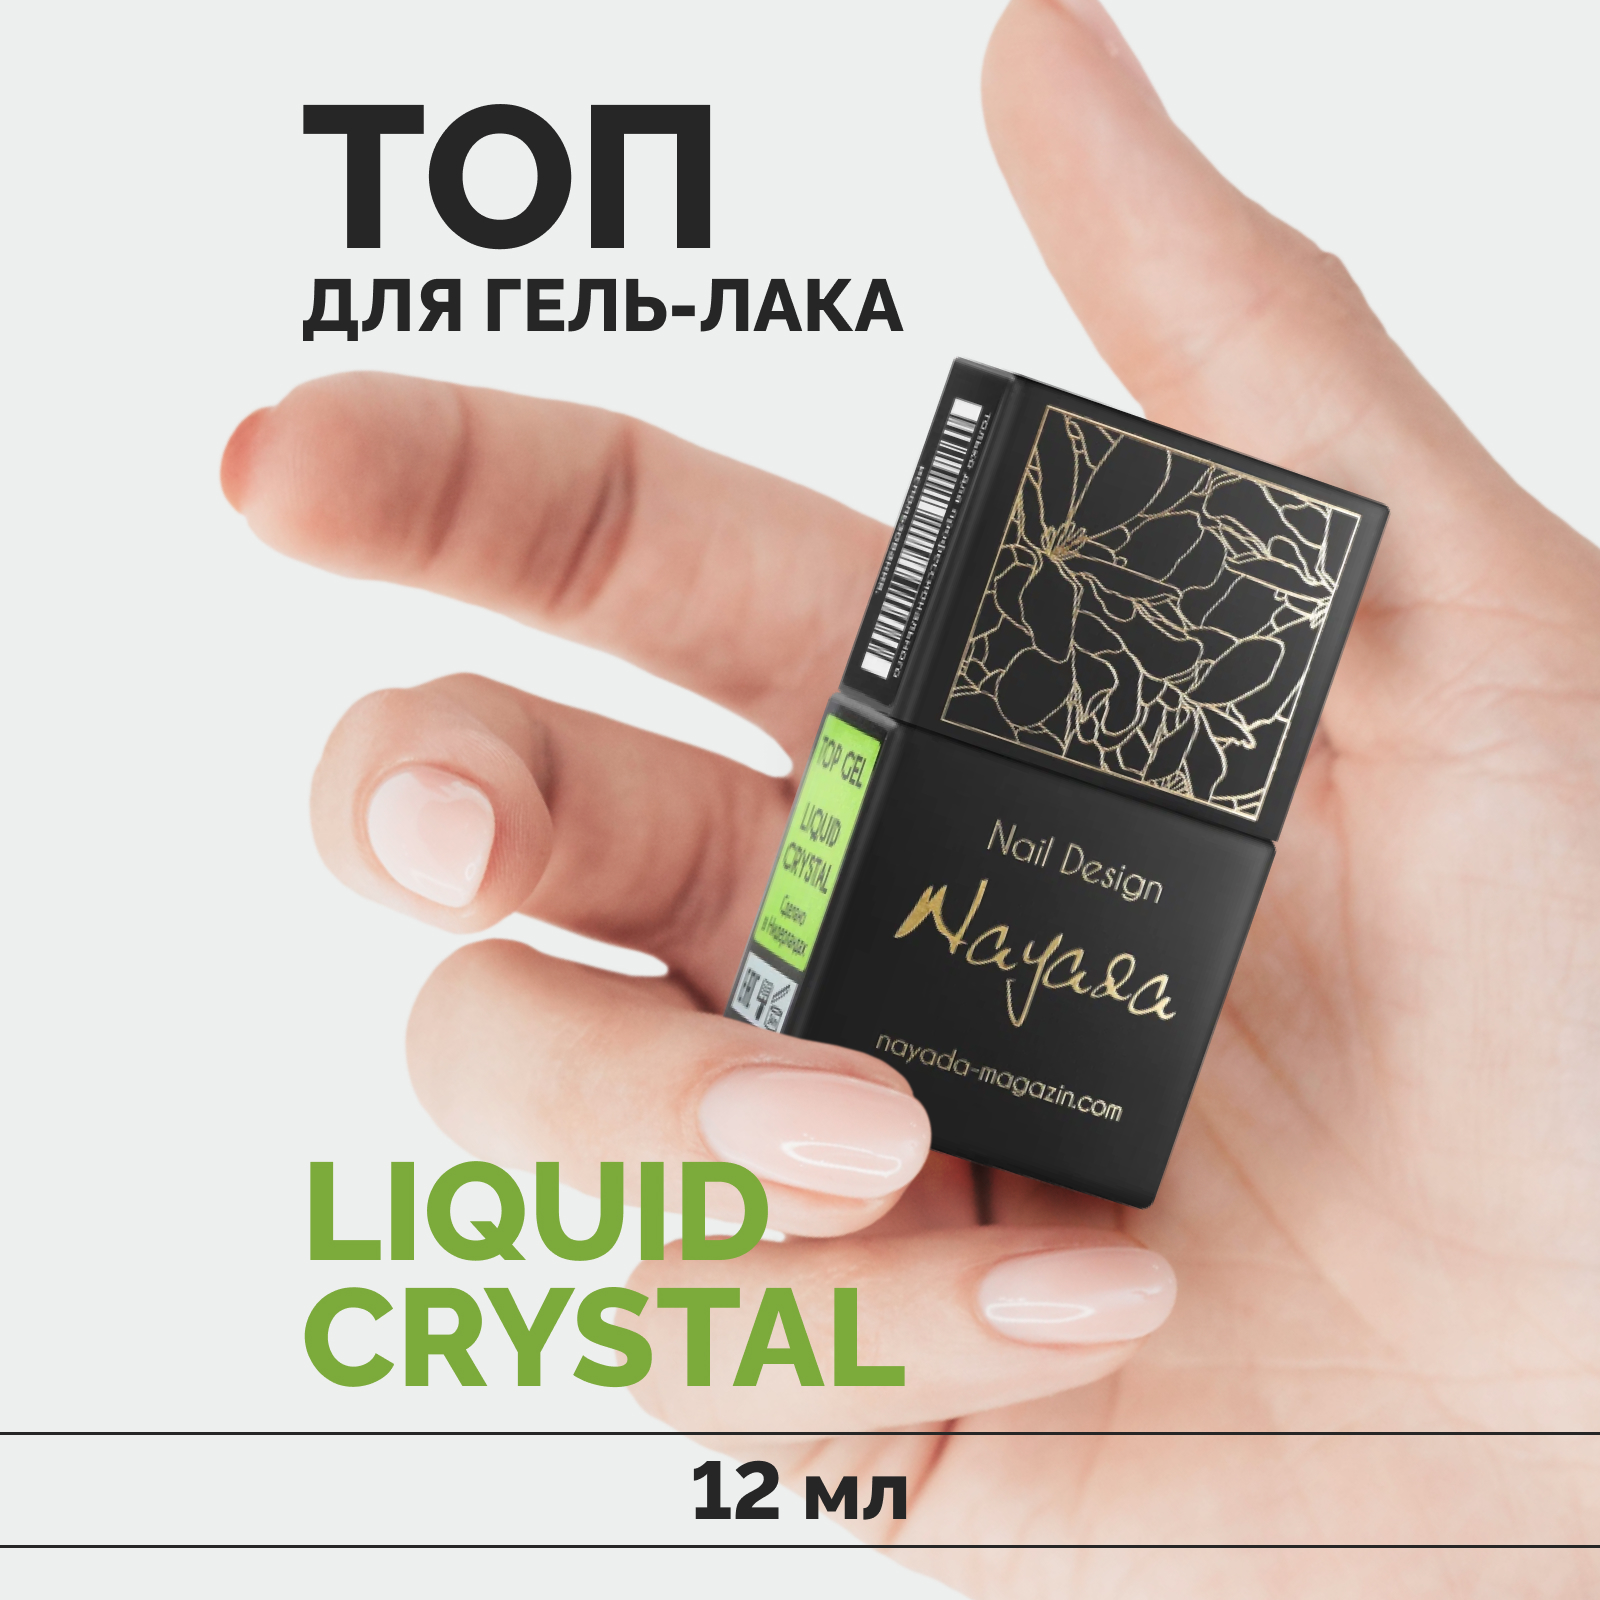 Топ для гель-лака Nayada Liquid Crystal глянцевый финиш для ногтей, прозрачный, 12 мл aravia professional набор очищение и укрепление гель эксфолиант 150 мл спрей активатор 150 мл